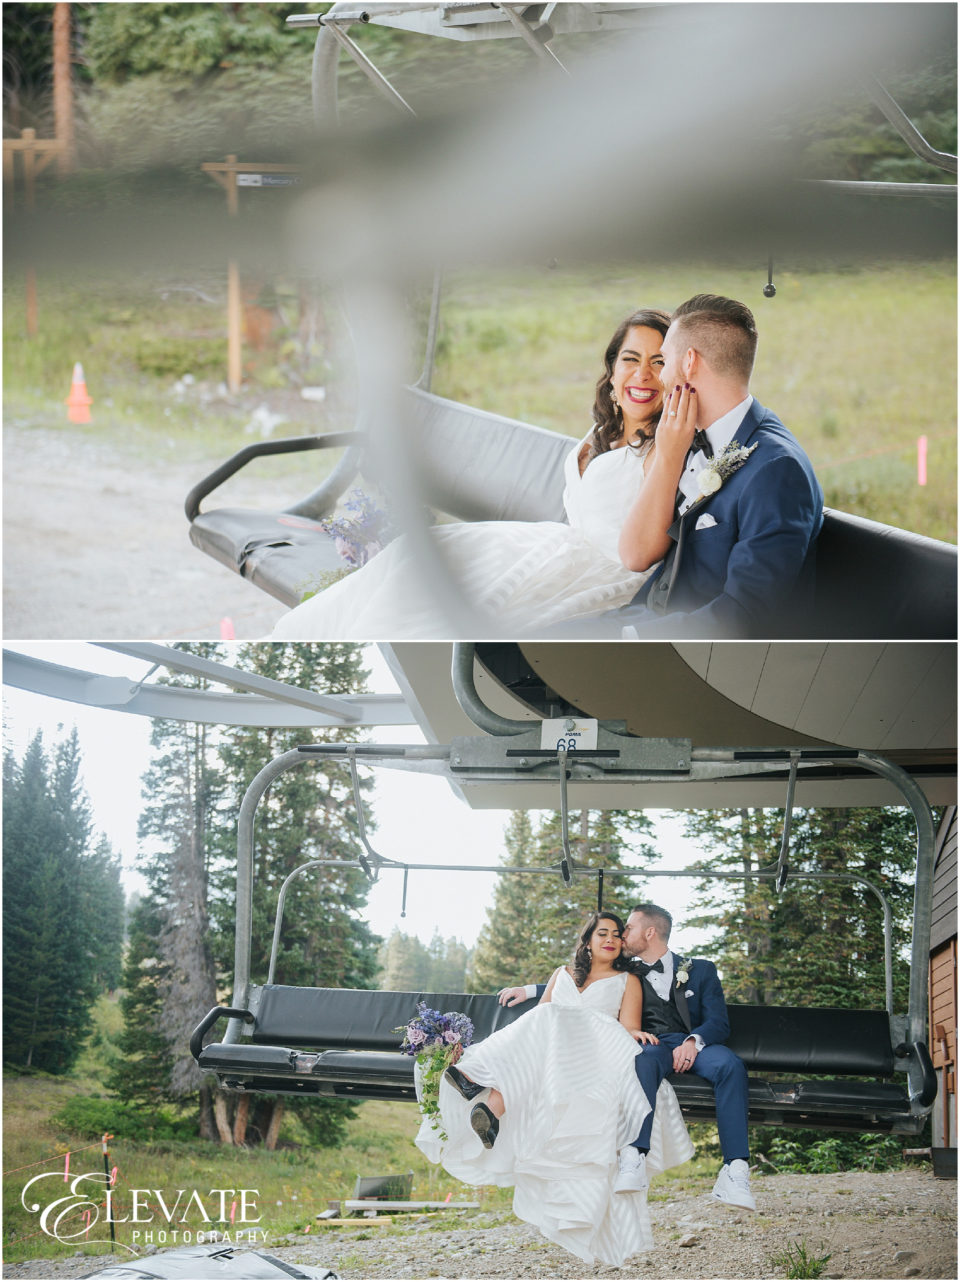 Ten Mile Station Wedding Photos